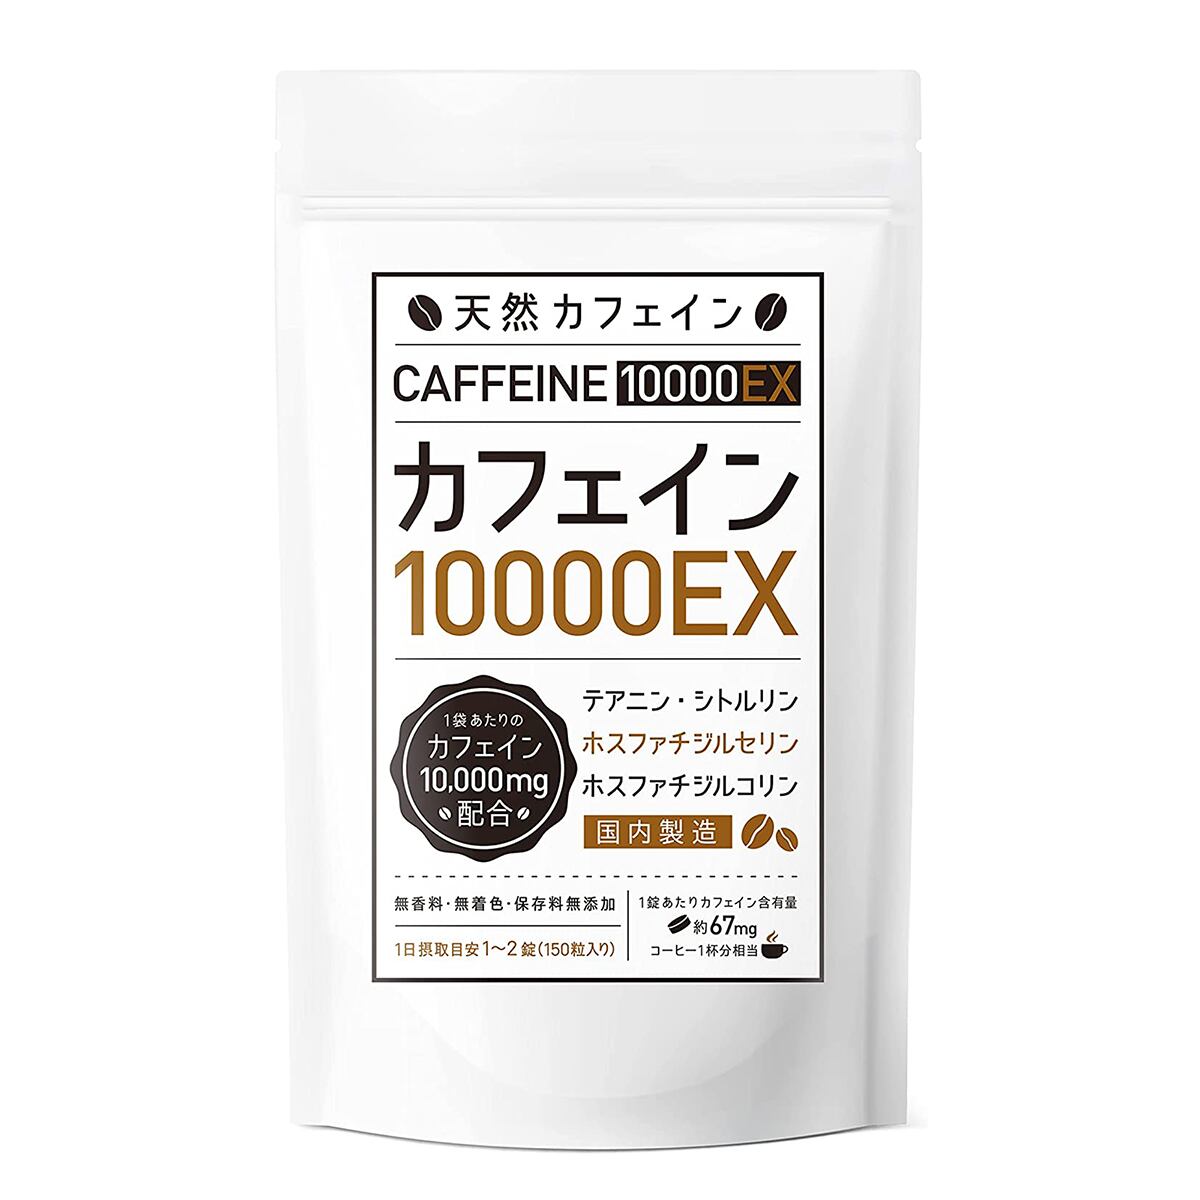 【２個まとめ買い15%OFF】カフェインサプリメント『カフェイン10000EX』